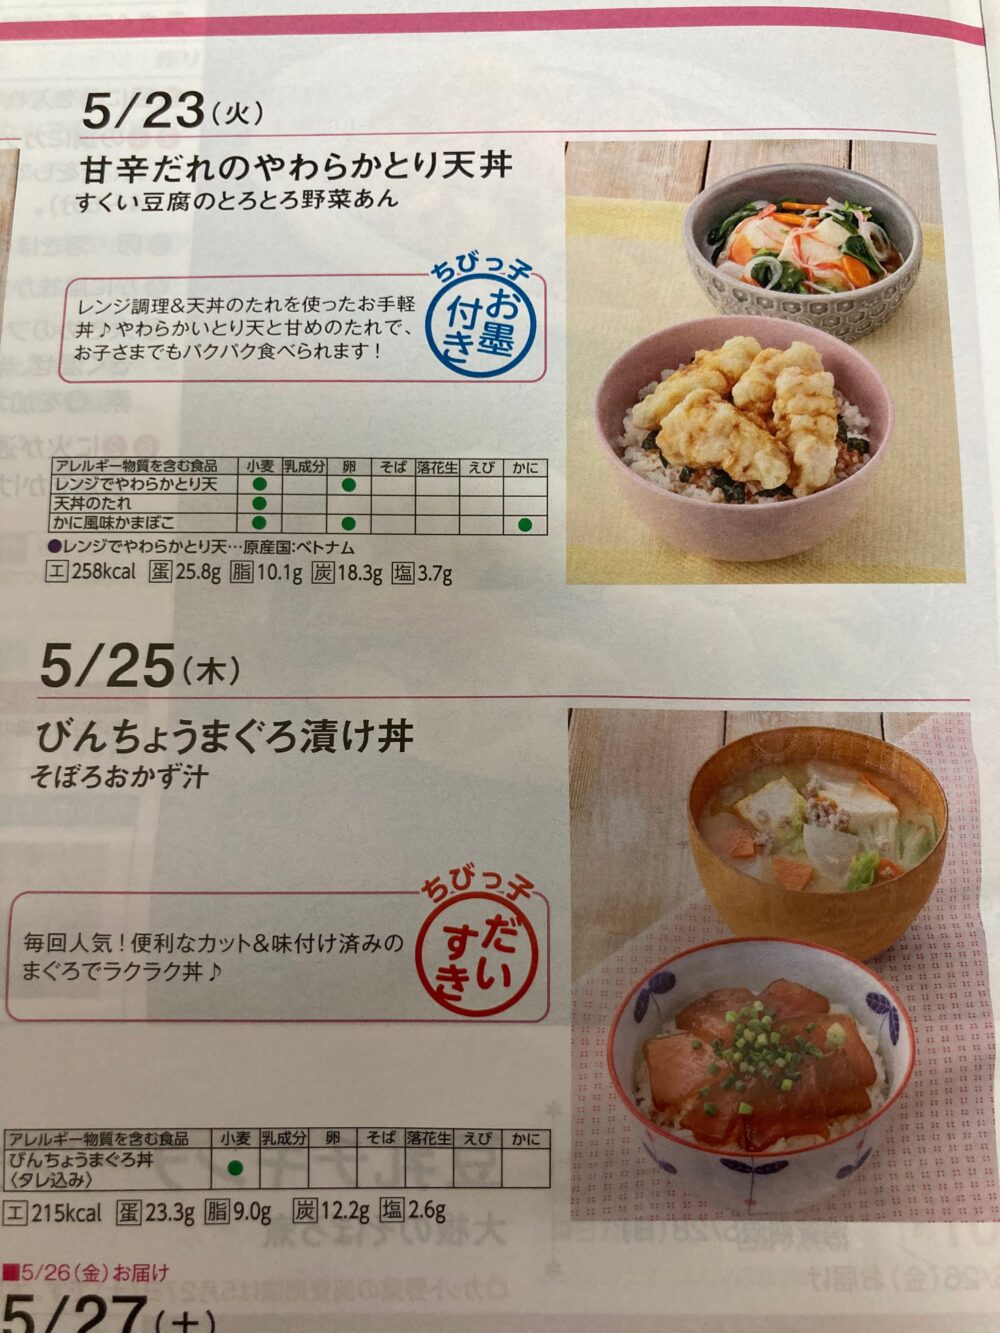 yoshikei_putimama_menu